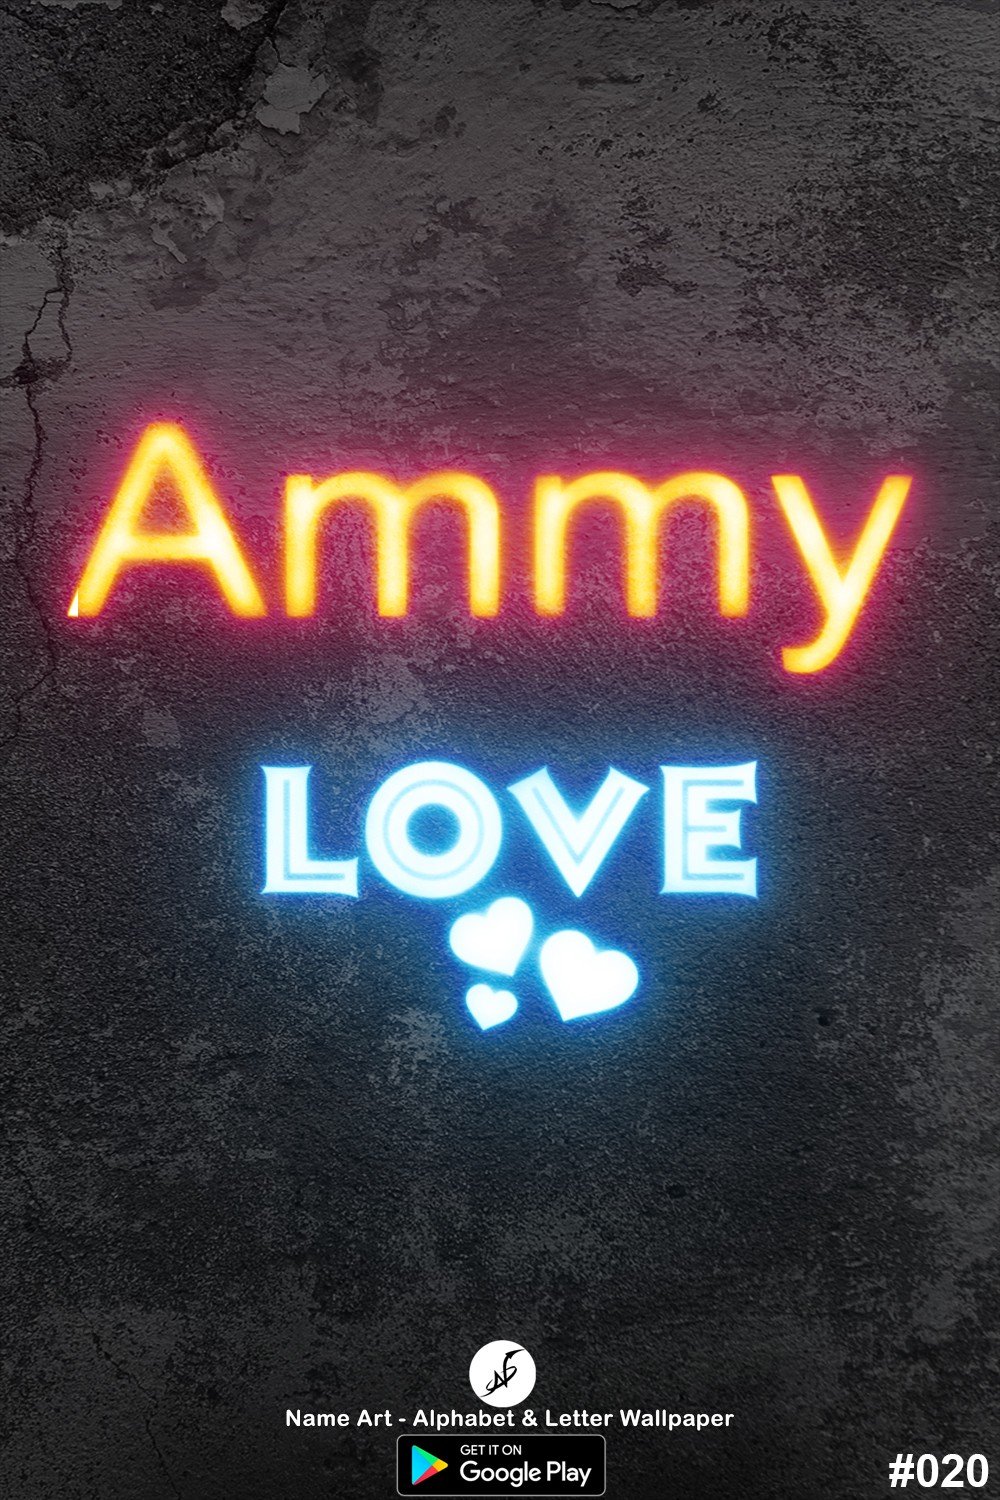 Ammy | Whatsapp Status Ammy | Happy Birthday Ammy !! | New Whatsapp Status Ammy Images |